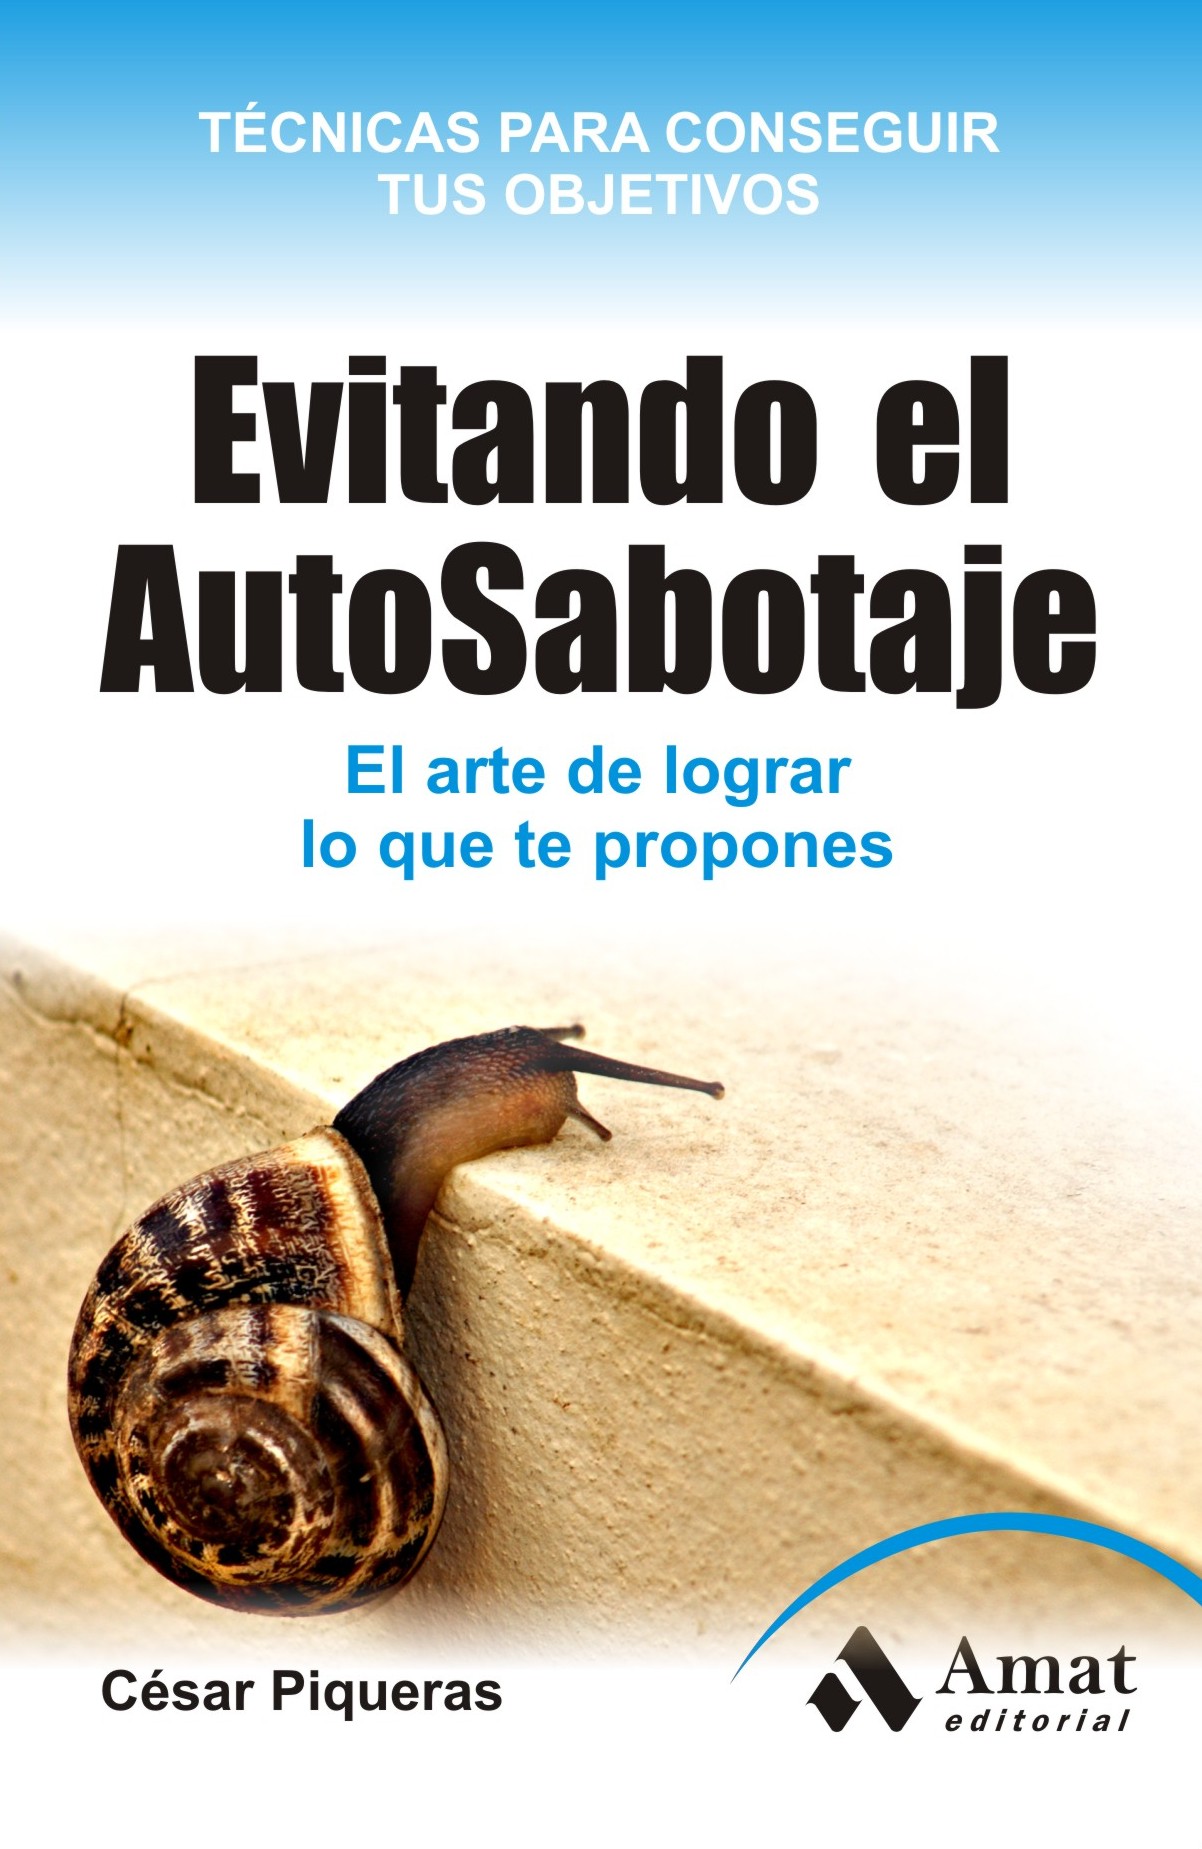 Evitando el autosabotaje | César Piqueras | Libros de empresa y negocios